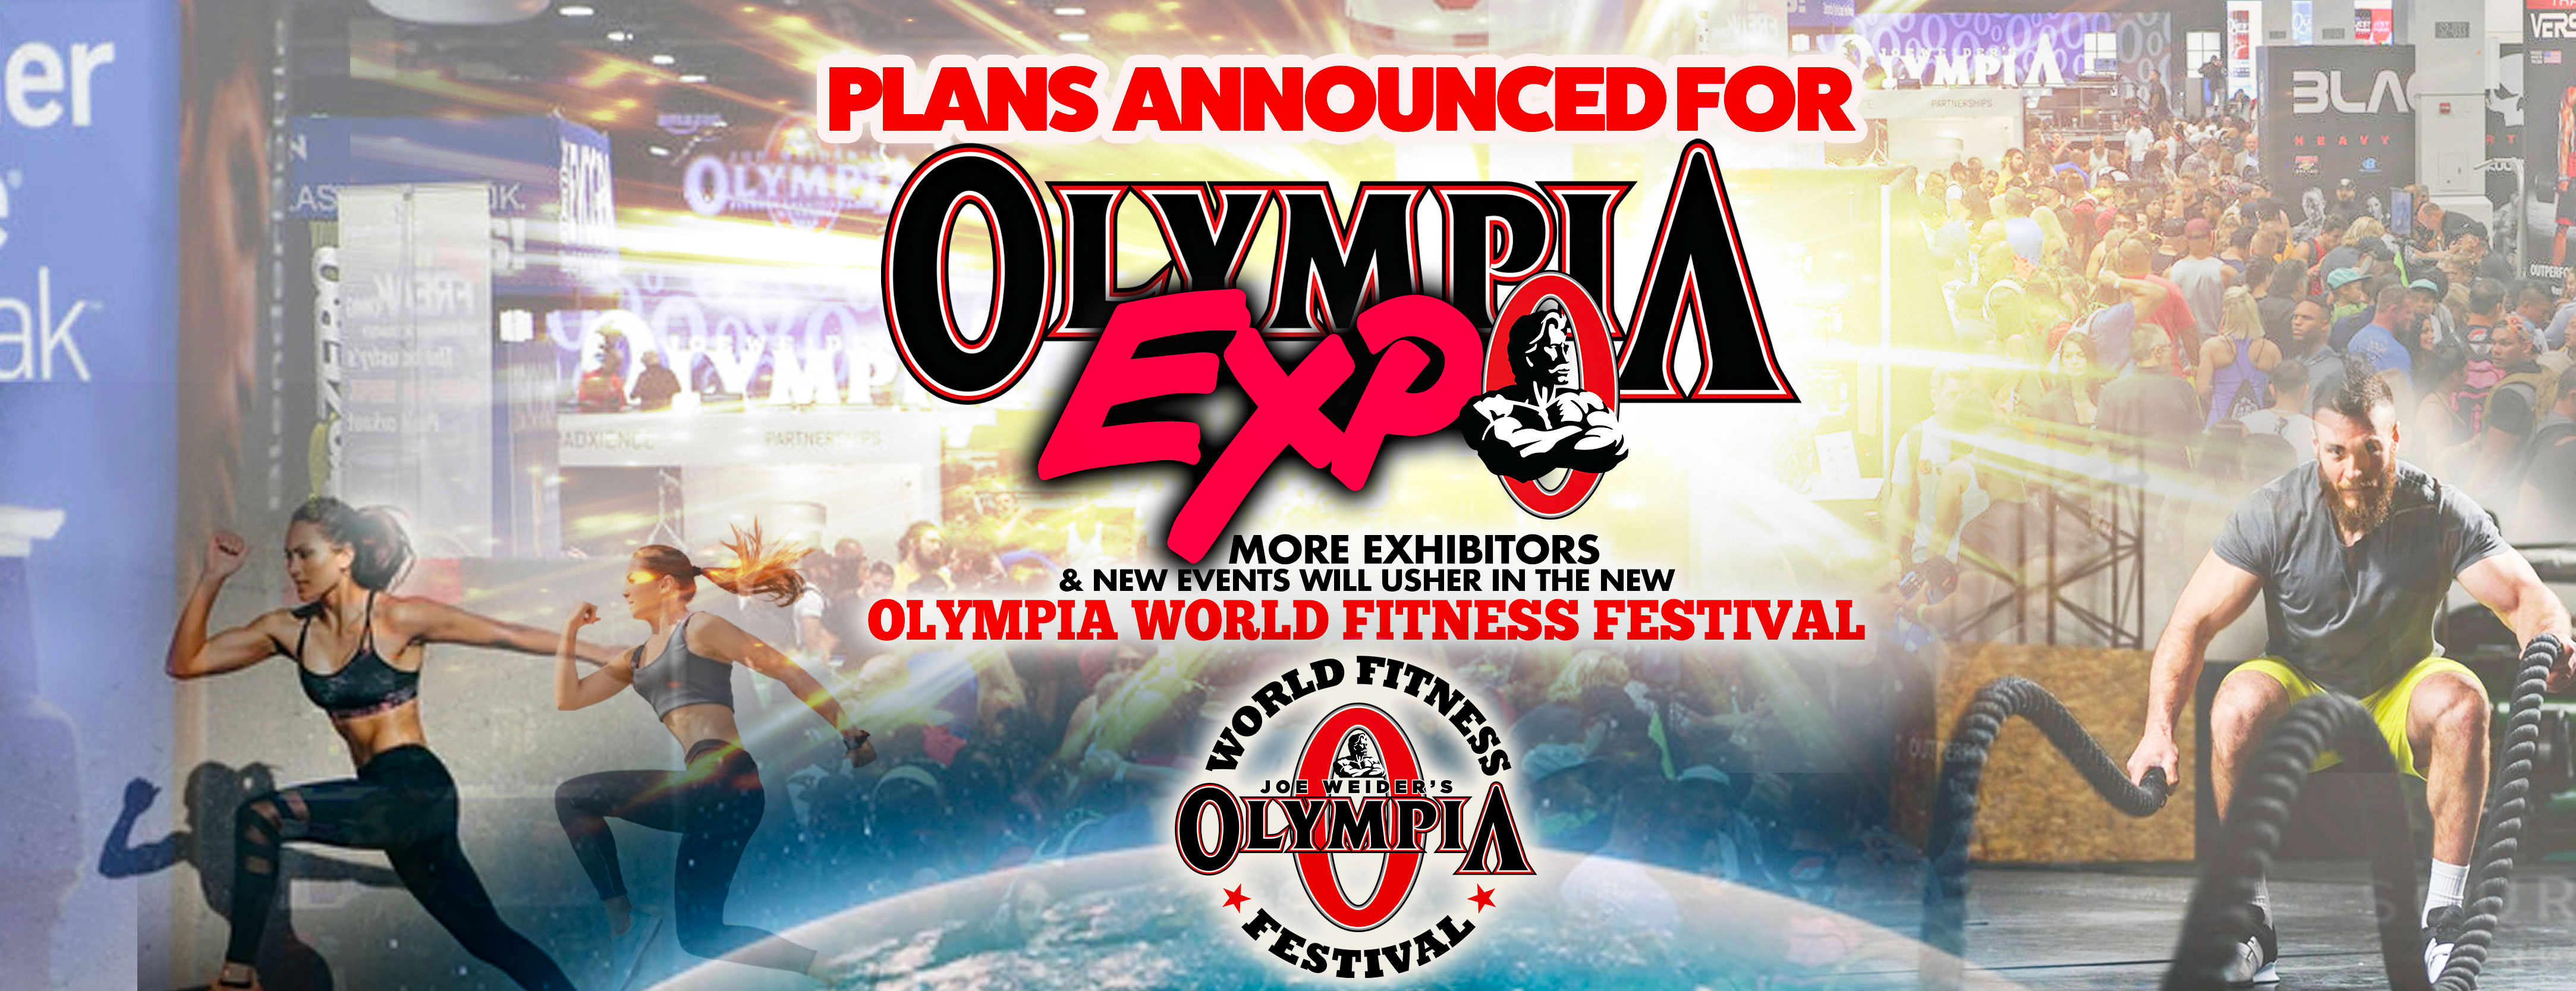 OLYMPIA EXPO “OLYMPIA WORLD FITNESS FESTIVAL” NPC News Online